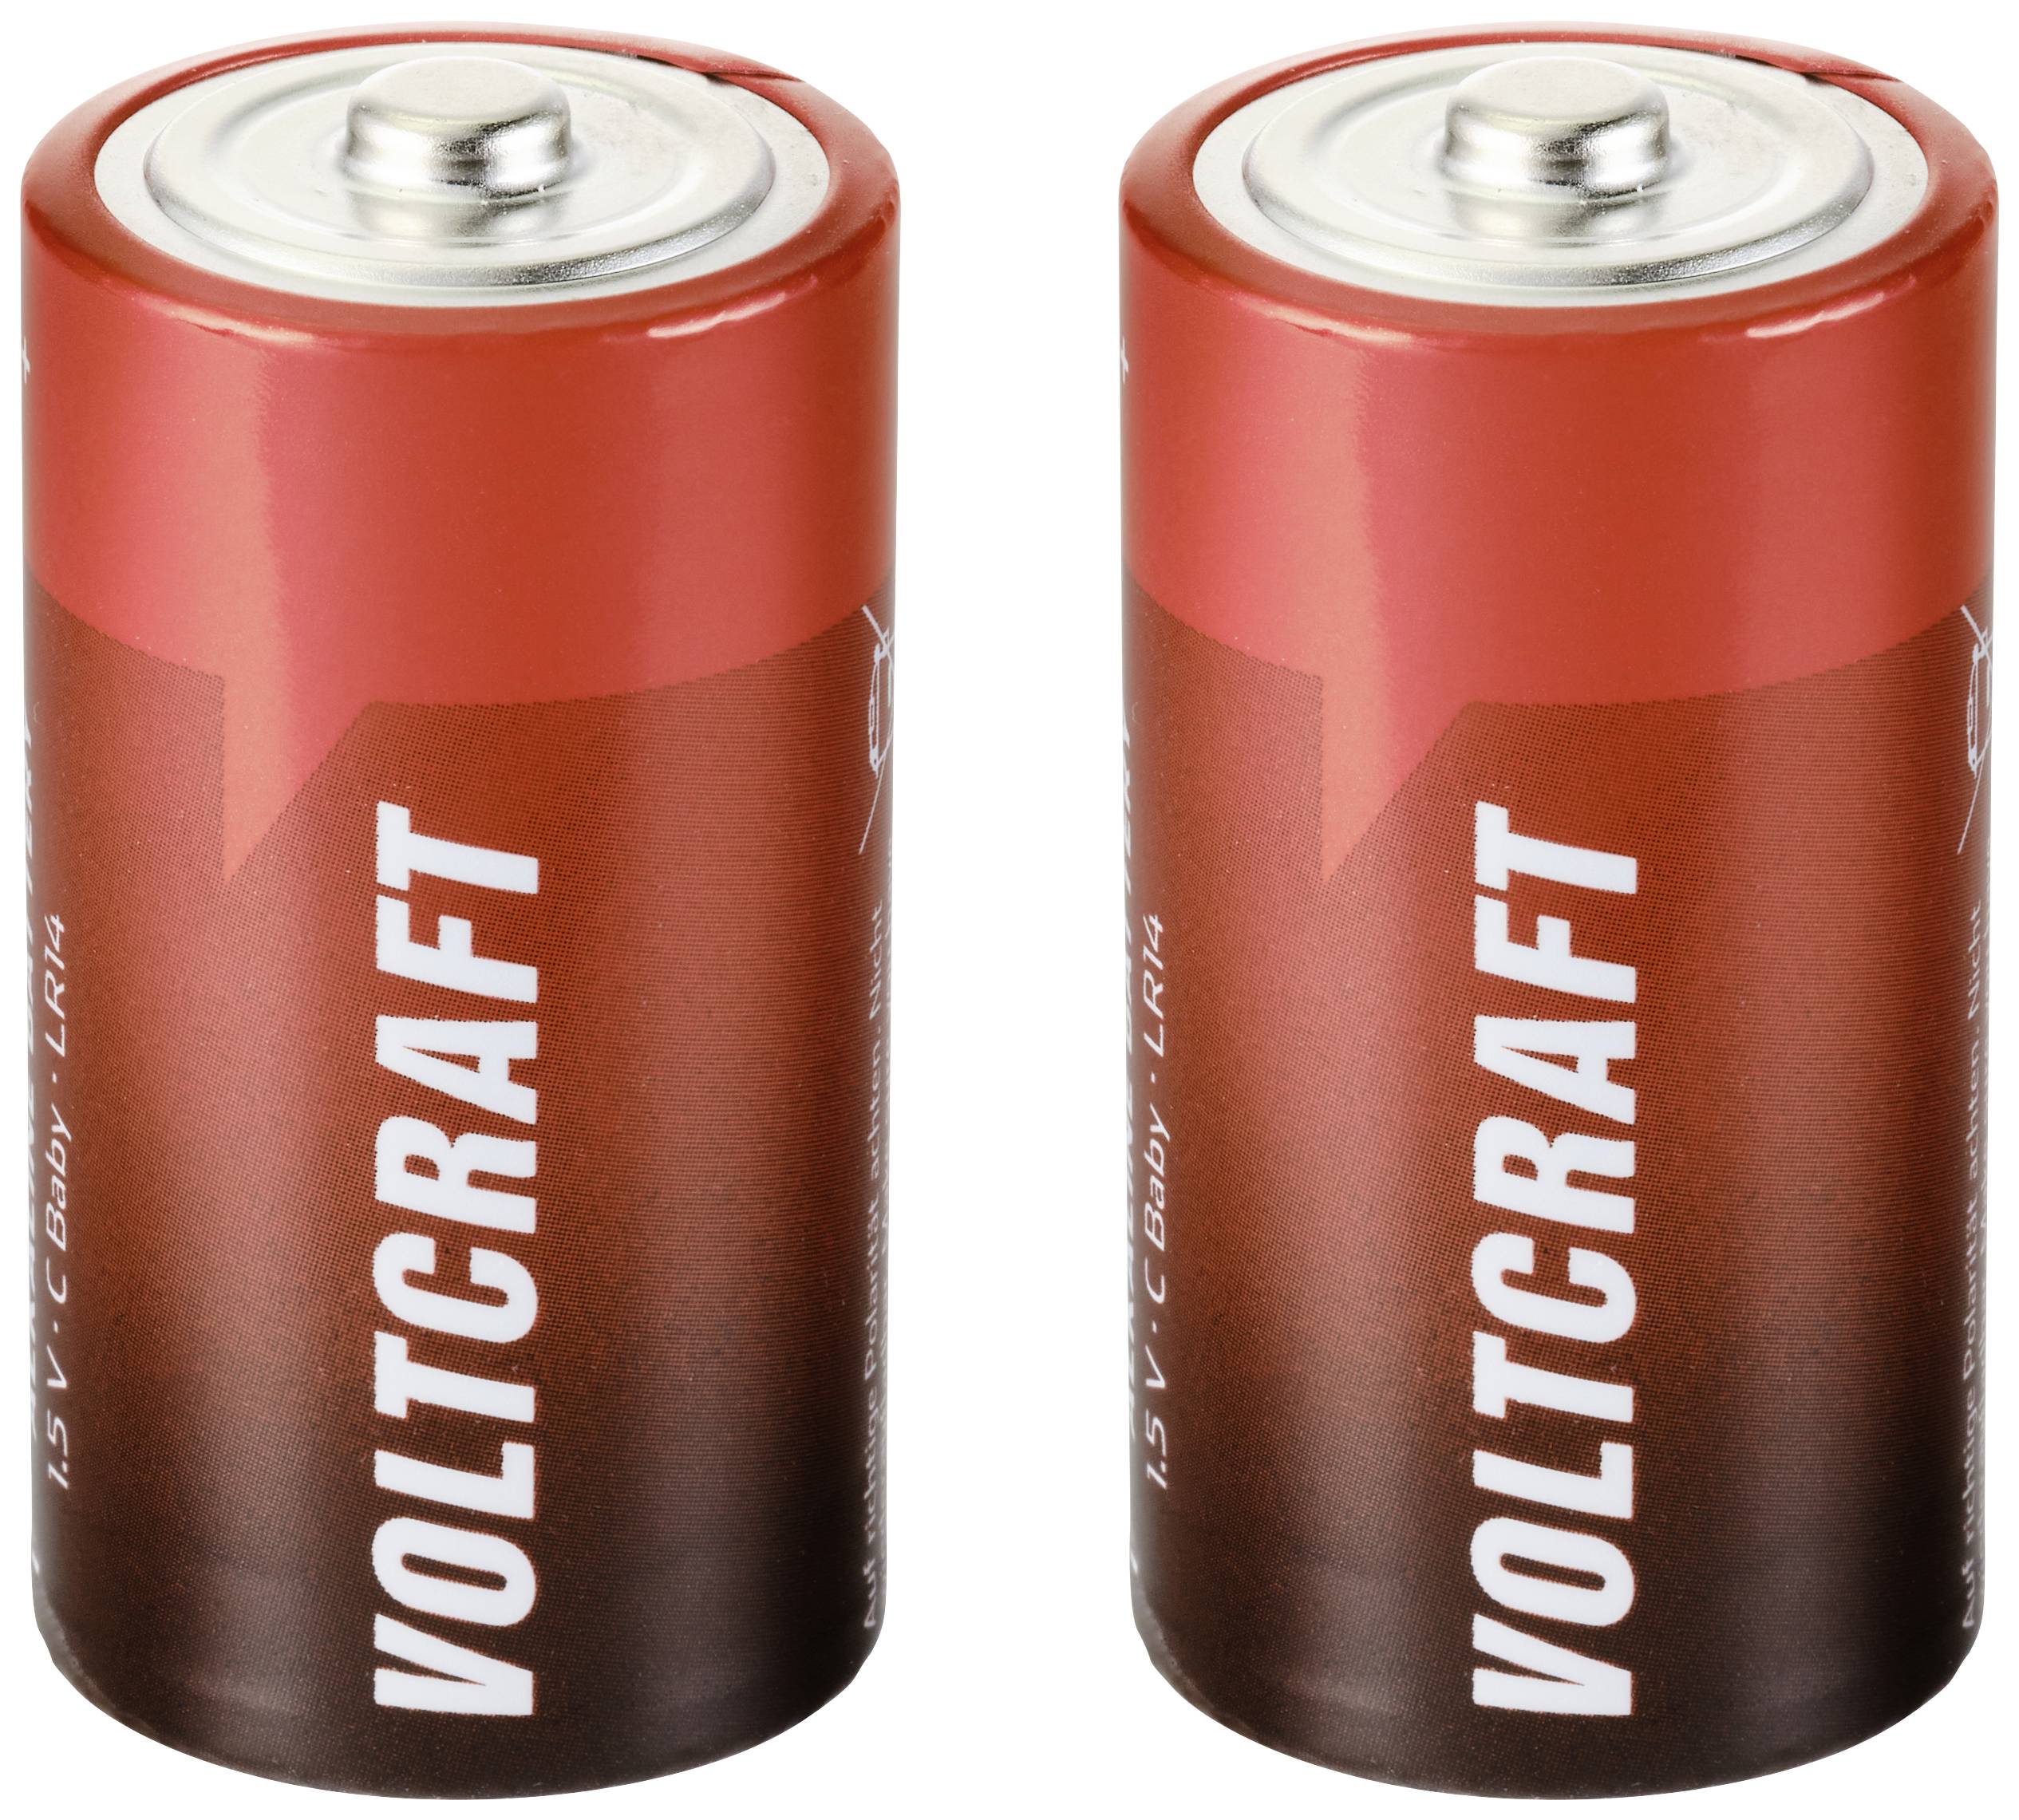 Verblinding Rijke man werkplaats VOLTCRAFT Industrial LR14 C batterij (baby) Alkaline 1.5 V 7500 mAh 2  stuk(s) kopen ? Conrad Electronic